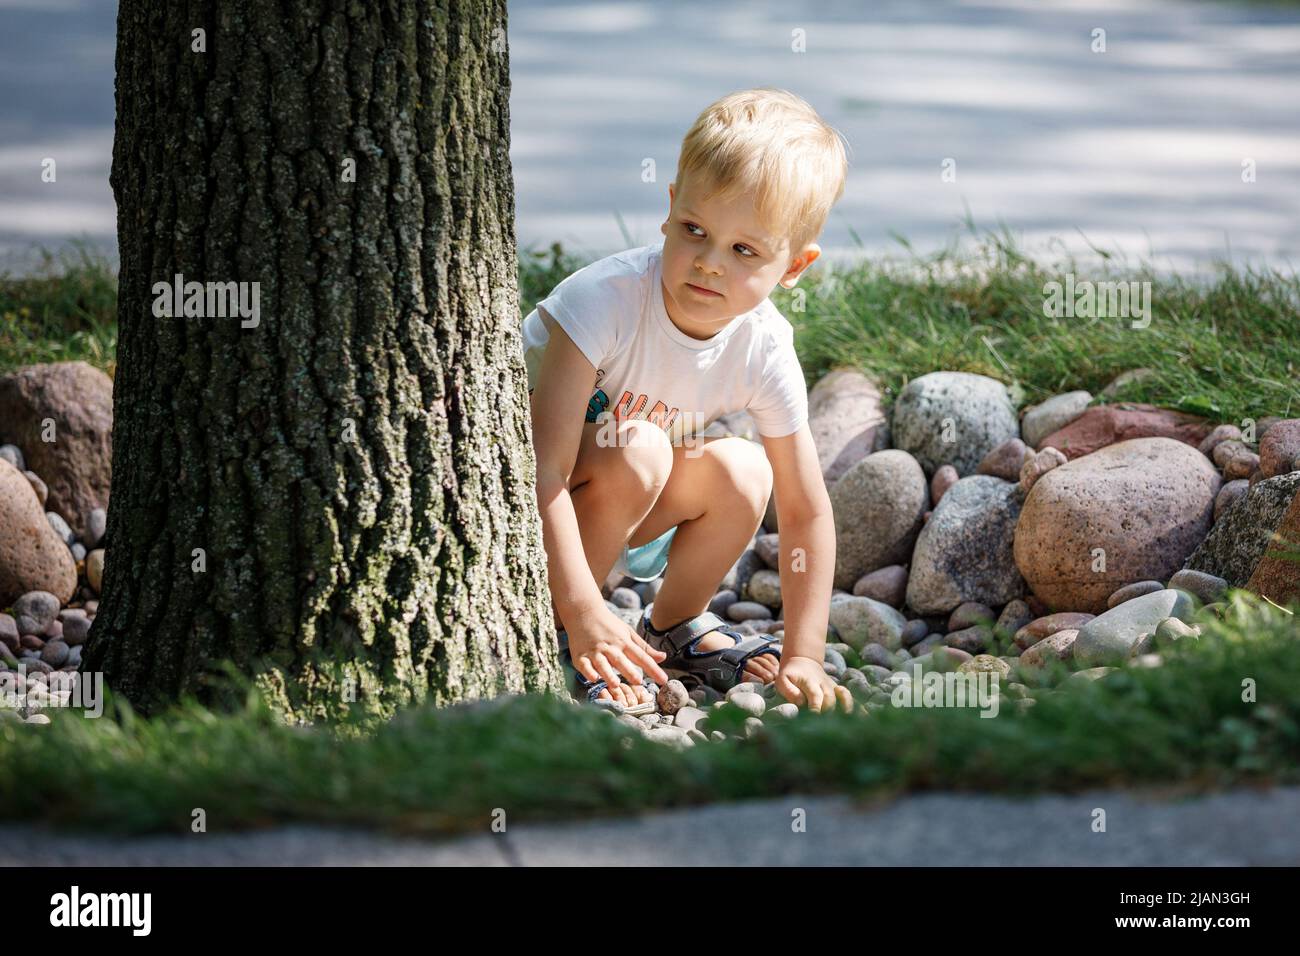 Un bambino gioca con i ciottoli nel parco cittadino. Il concetto di ricreazione, gioco e lo sviluppo delle abilità motorie dei bambini. Foto di alta qualità. Foto Stock